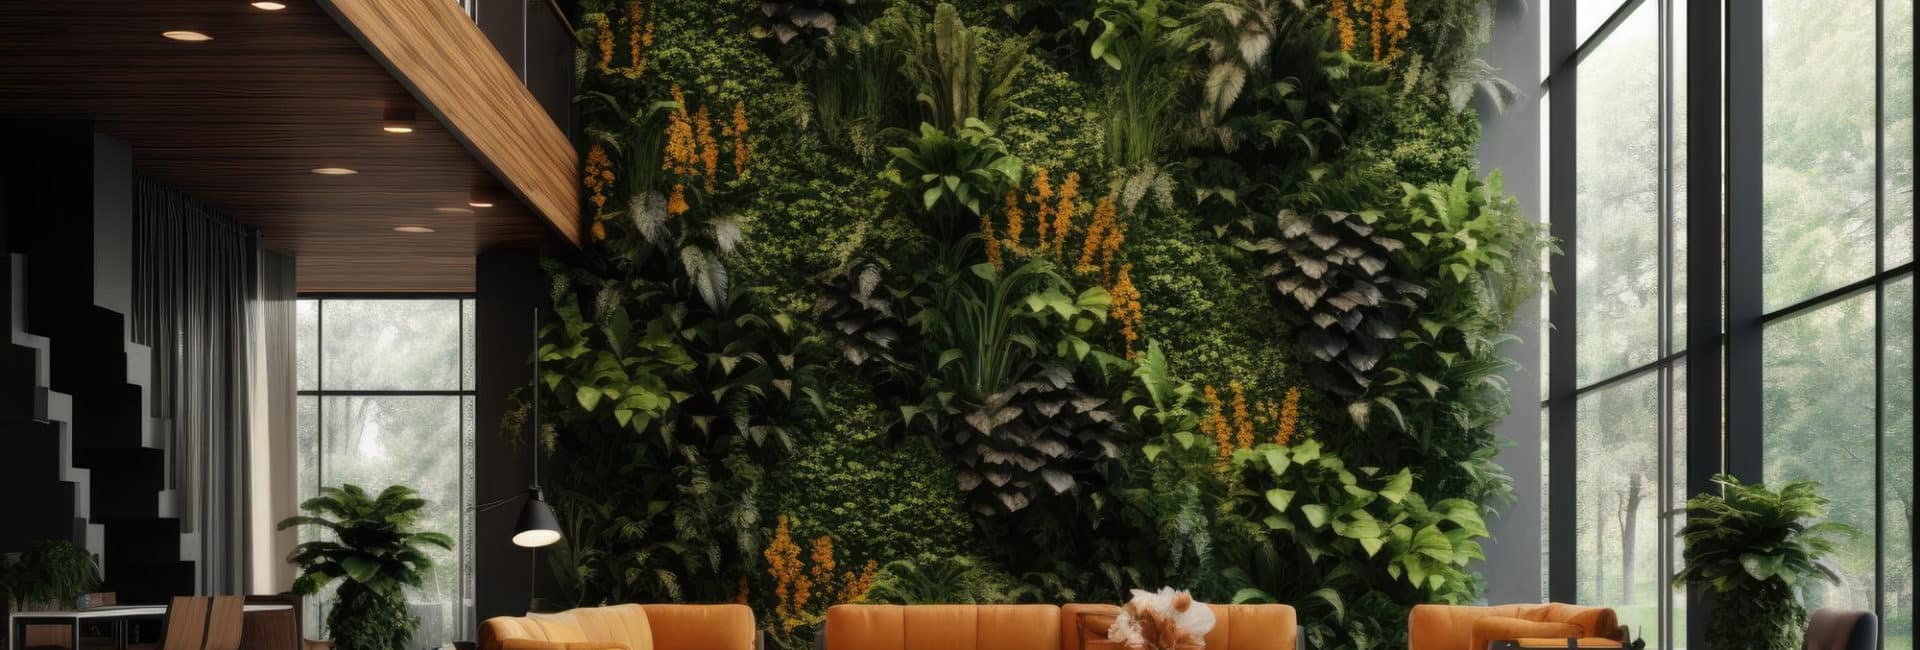 Imagem de um hall de entrada de prédio com enorme parede verde para simbolizar o paisagismo corporativo